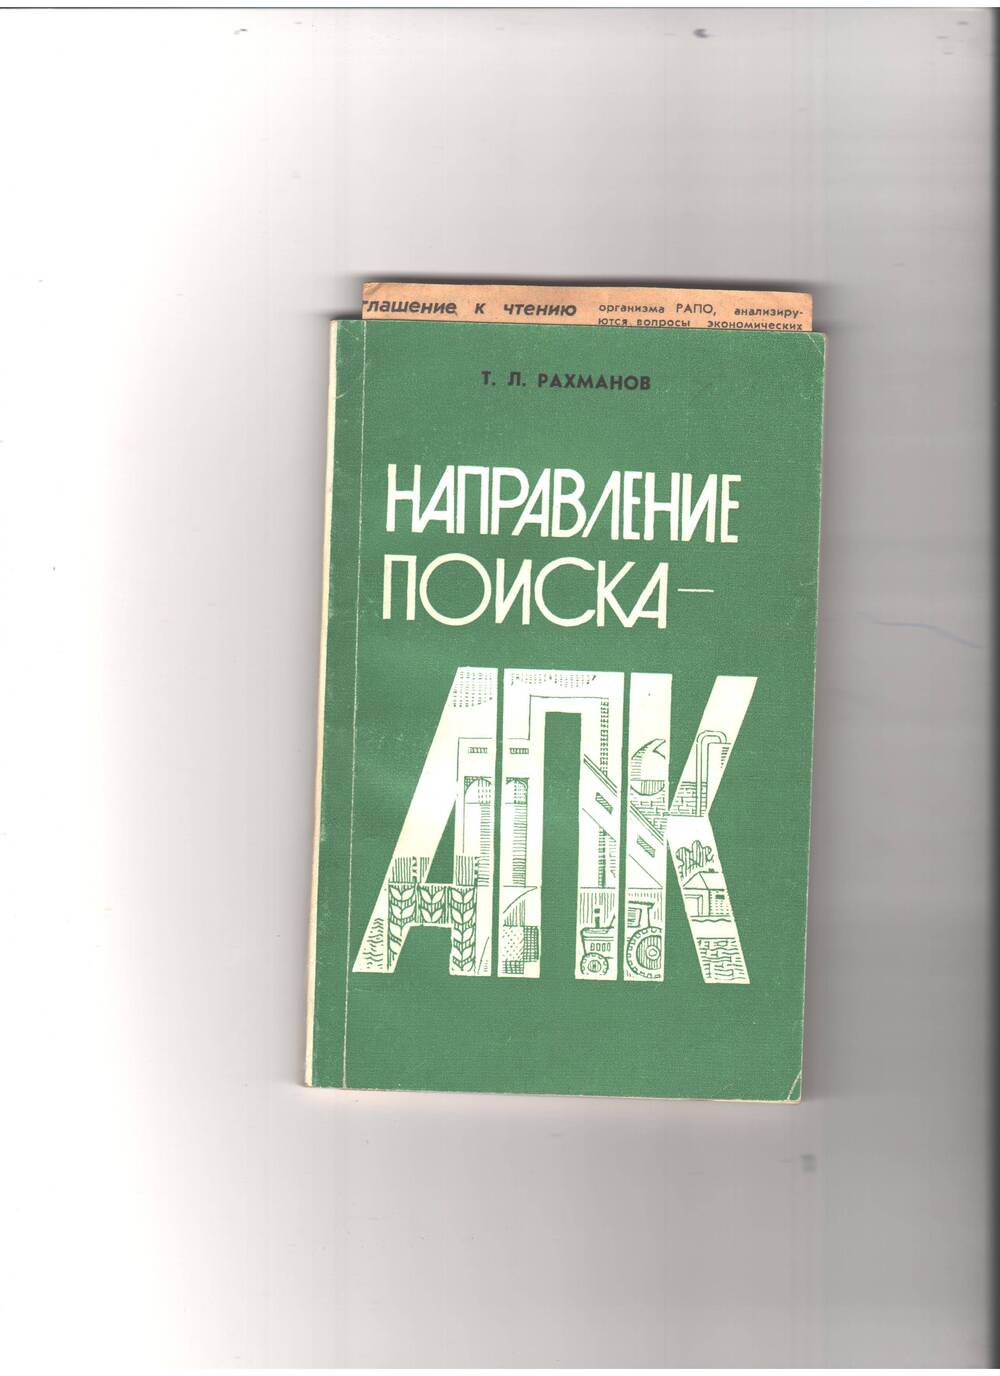 Книга Направление поиска АПК с дарственной надписью автора Т.Л.Рахманова